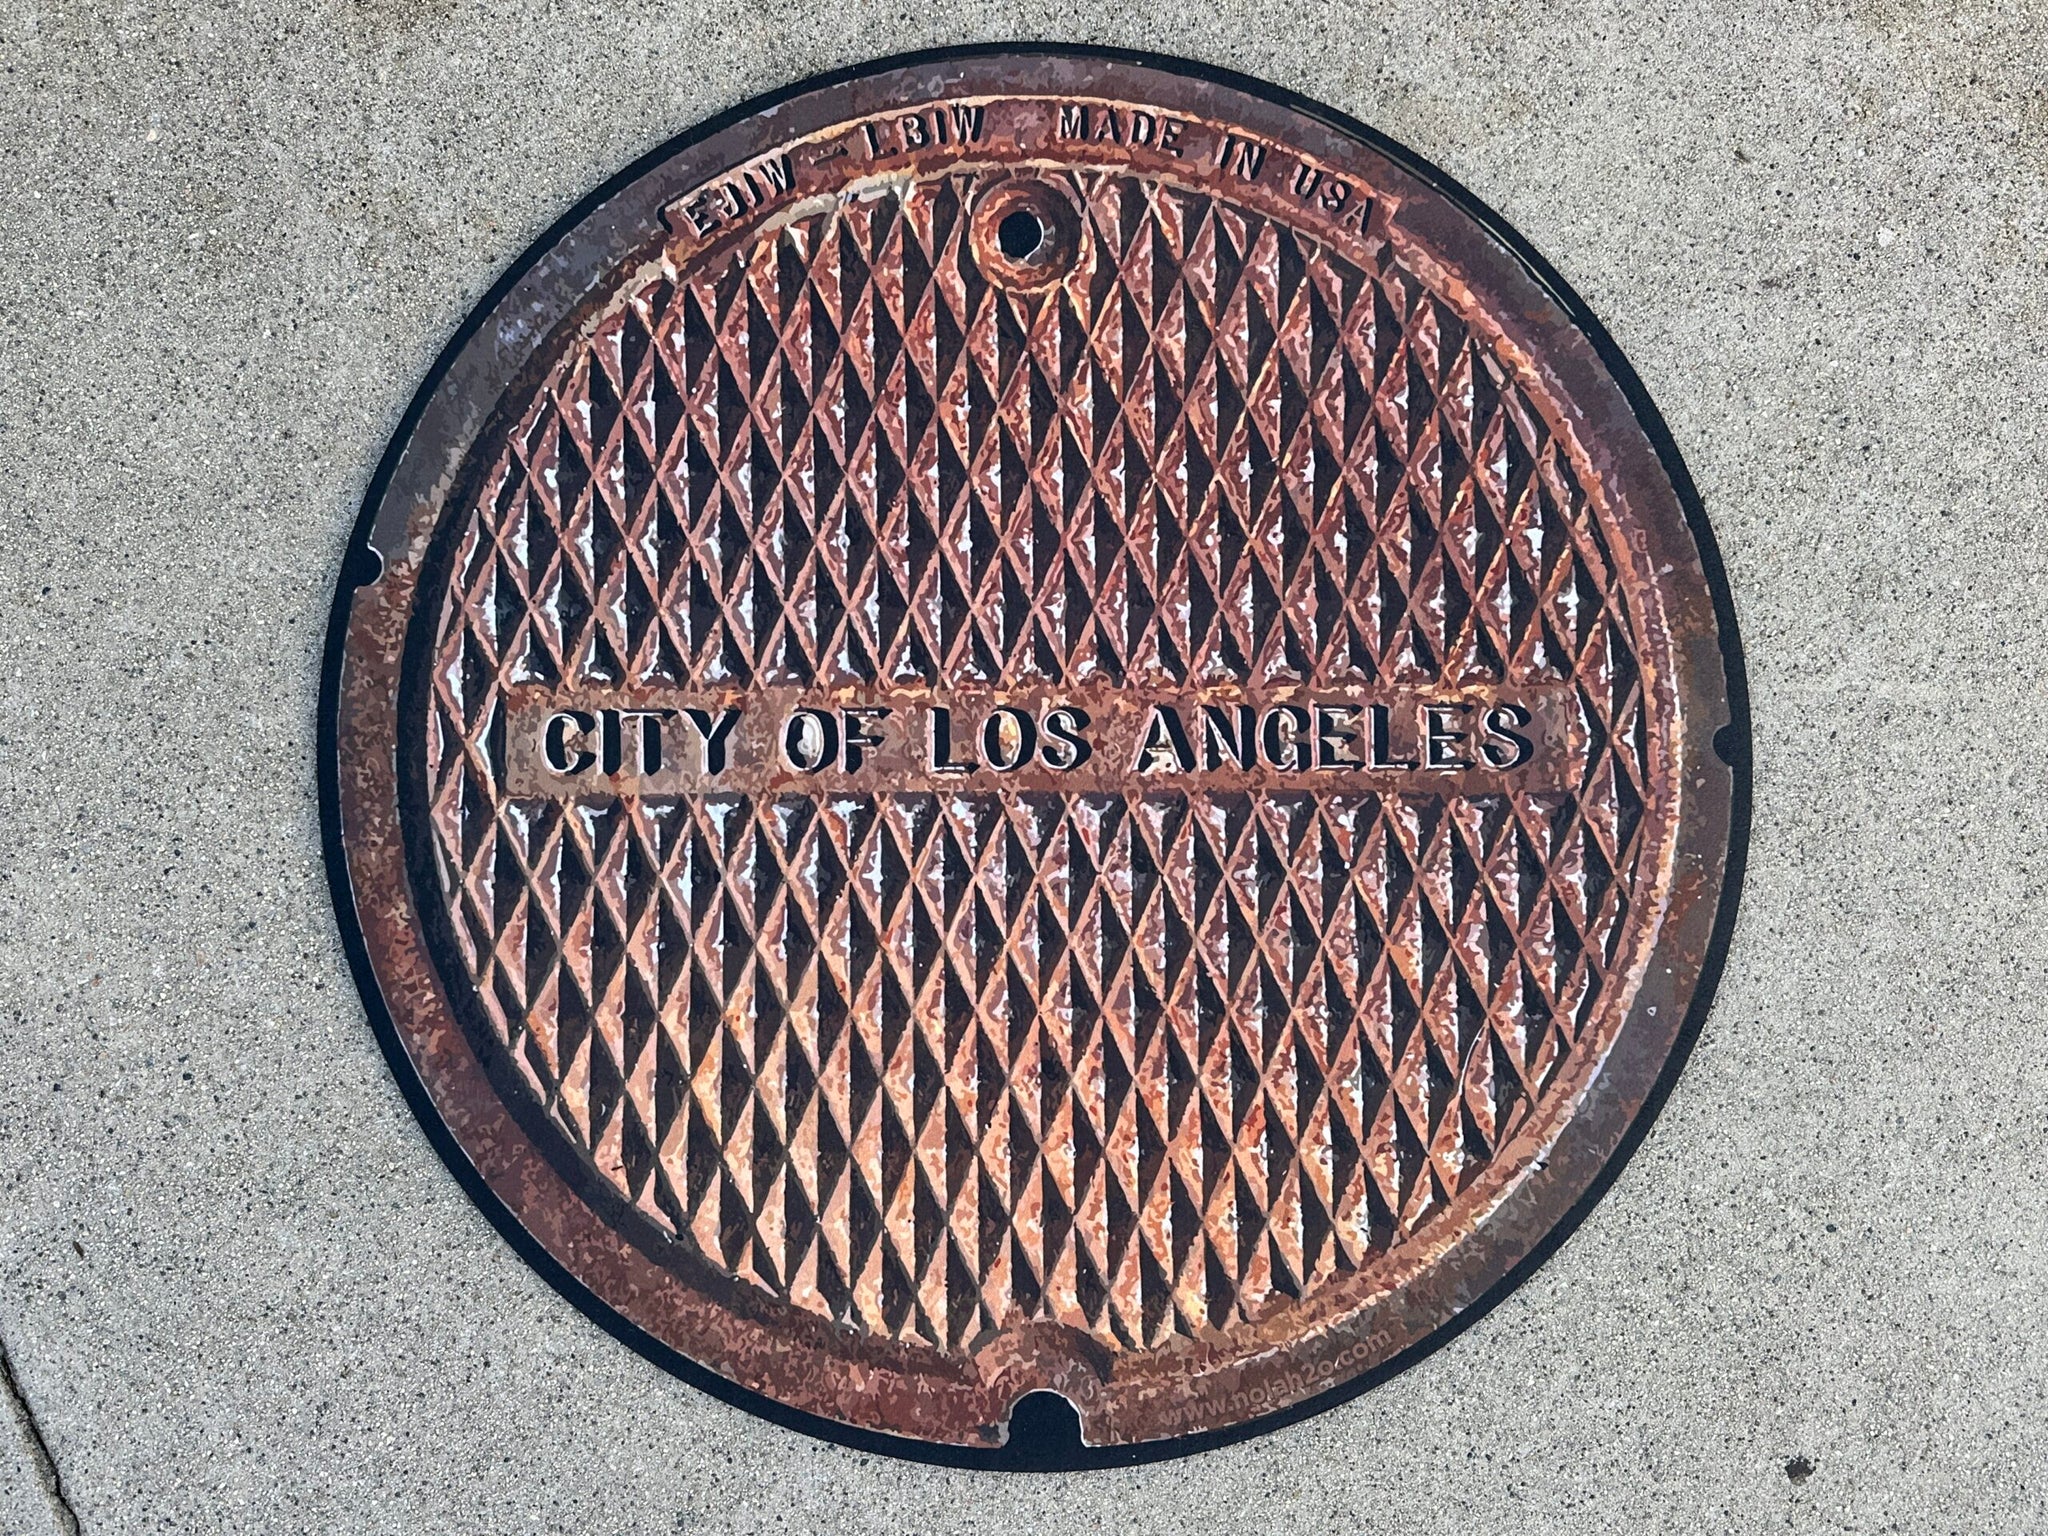 LOS ANGELES MANHOLE DOORMAT